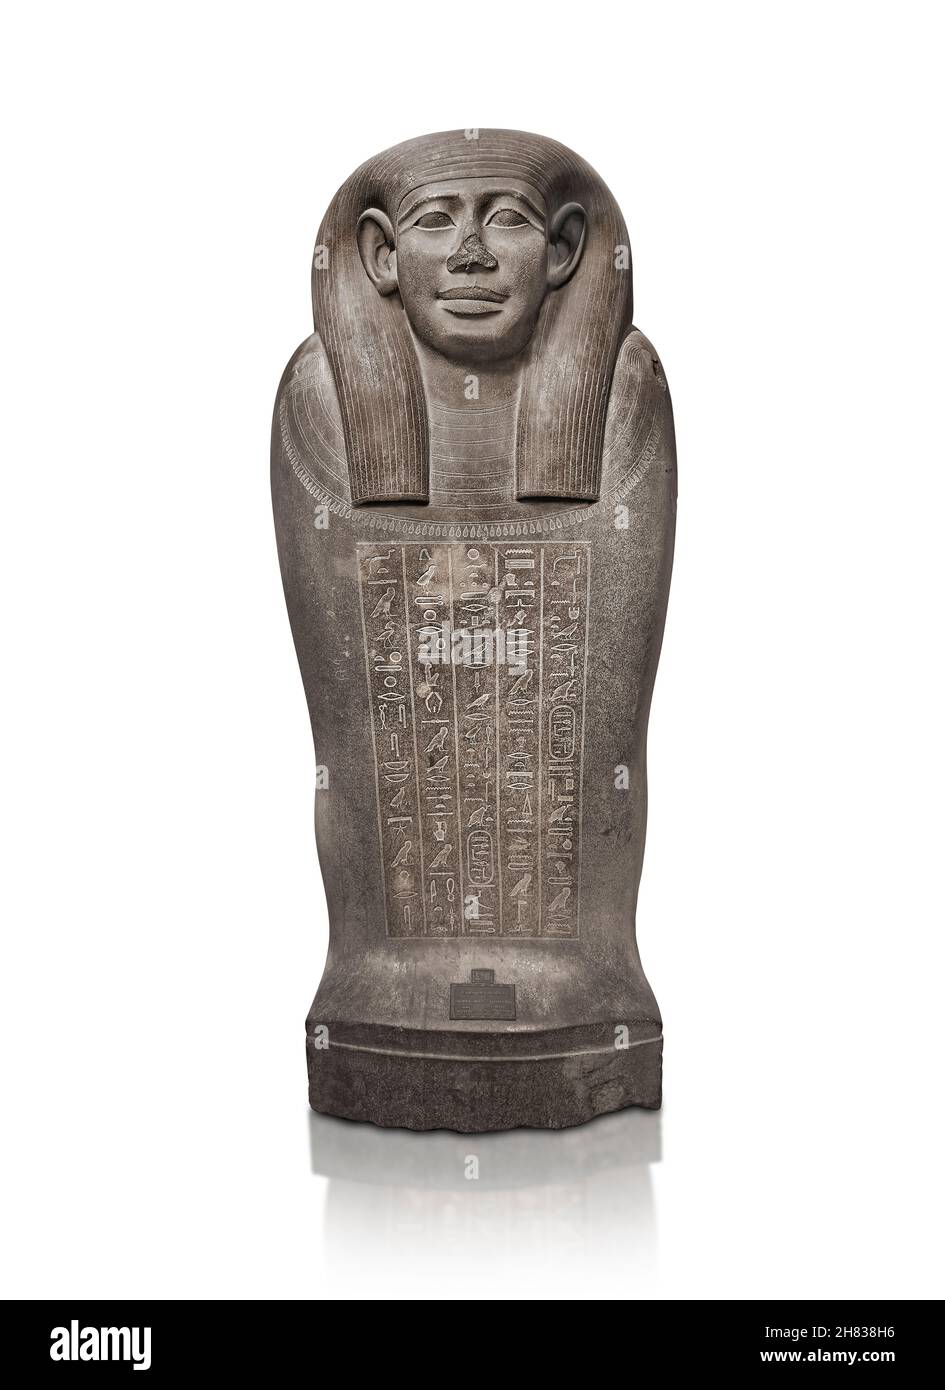 Alter ägyptischer Stein-Mumie-Sarkophag Deckel von Konigin Chedeb-Neith-IRET-Bun, 600 v. Chr., 26th Dynastie. Kunsthistorisches Muesum Wien ALS 3, wie sarco Stockfoto